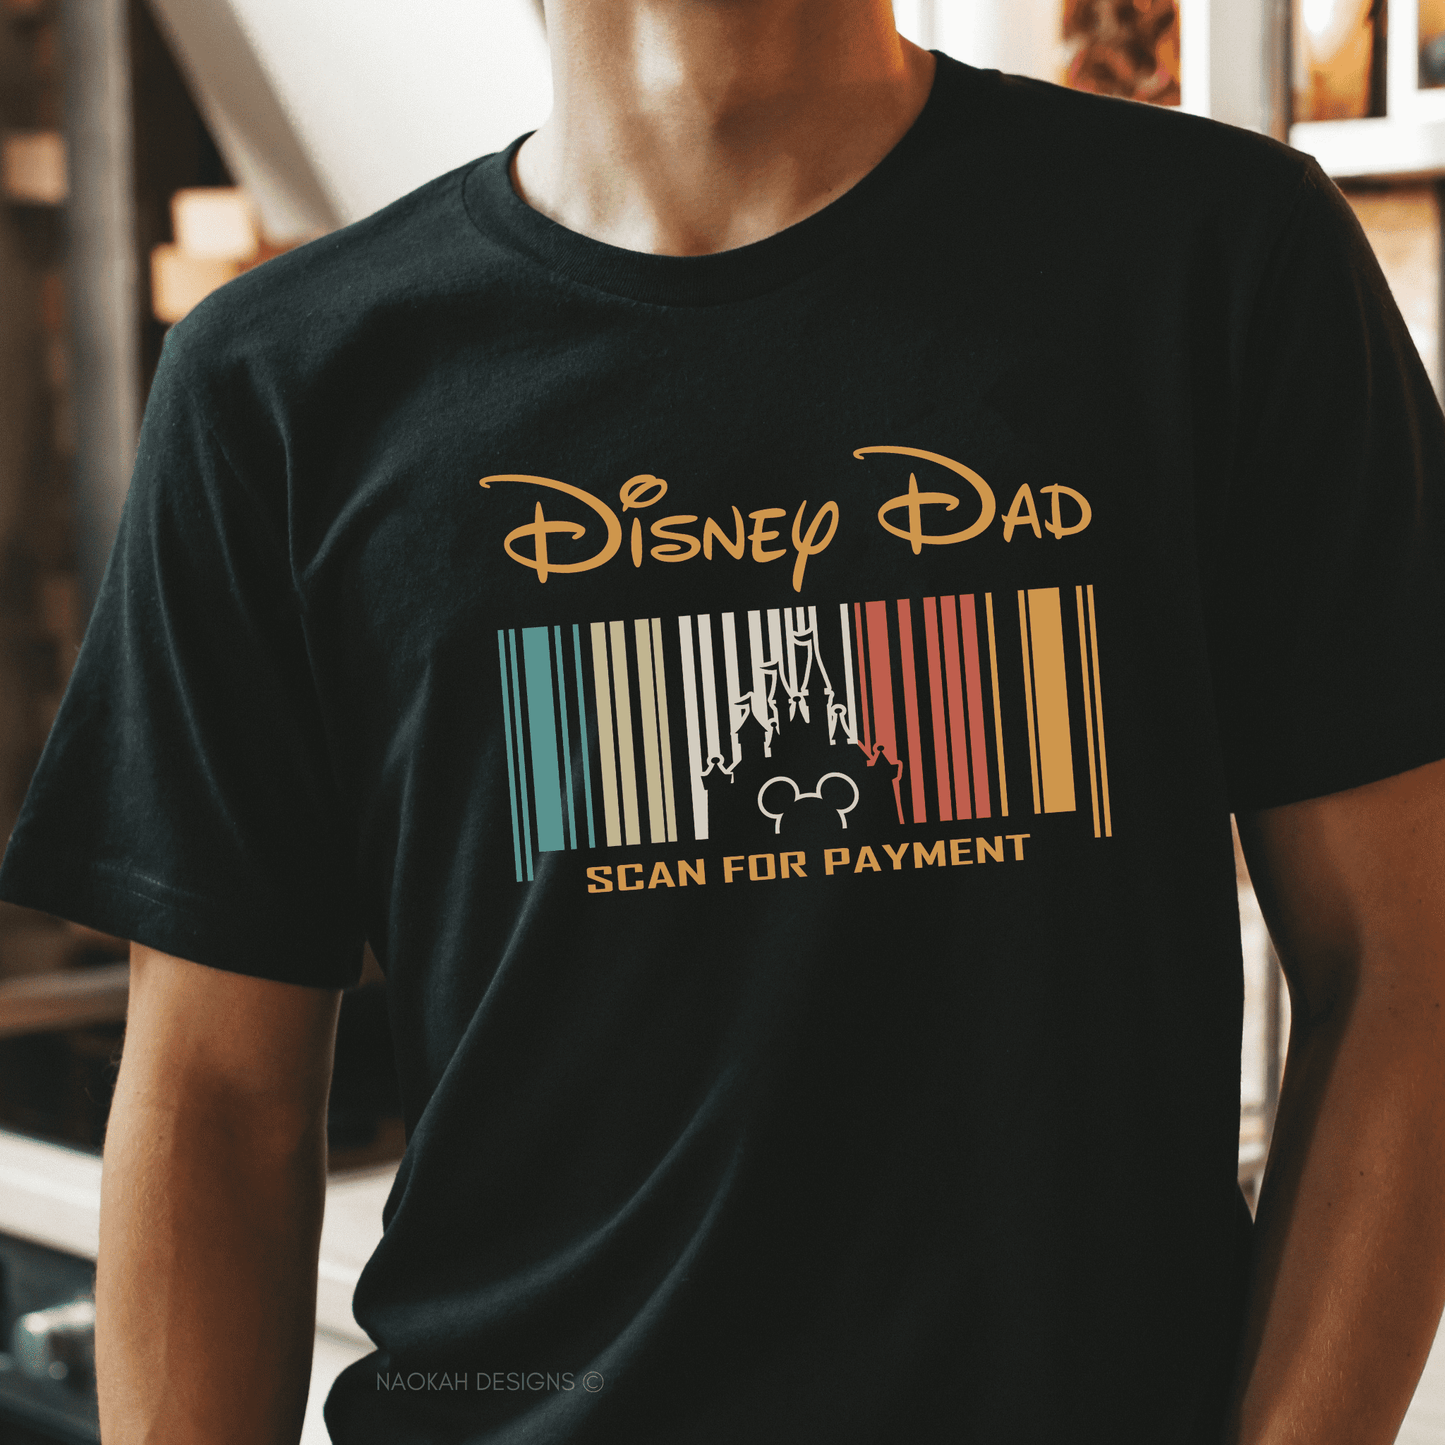 disney dad shirt, scan for payment shirt, disney dad scan for payment shirt, disney family trip, disney vacation, disney family vacation